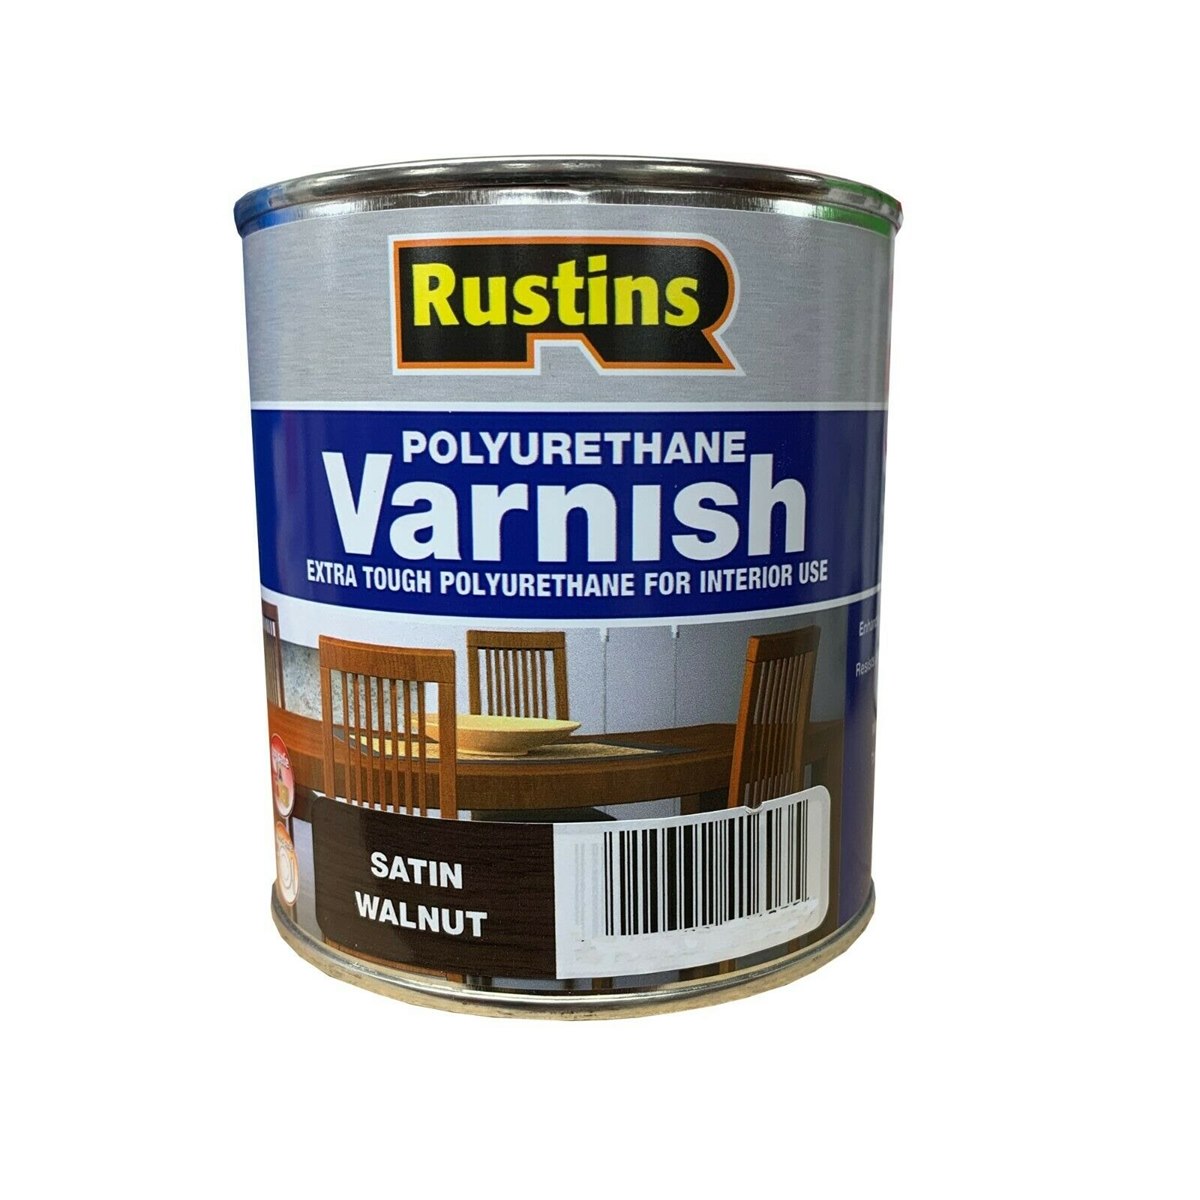 Rustins Polyurethane Varnish Satin Walnut 250ml